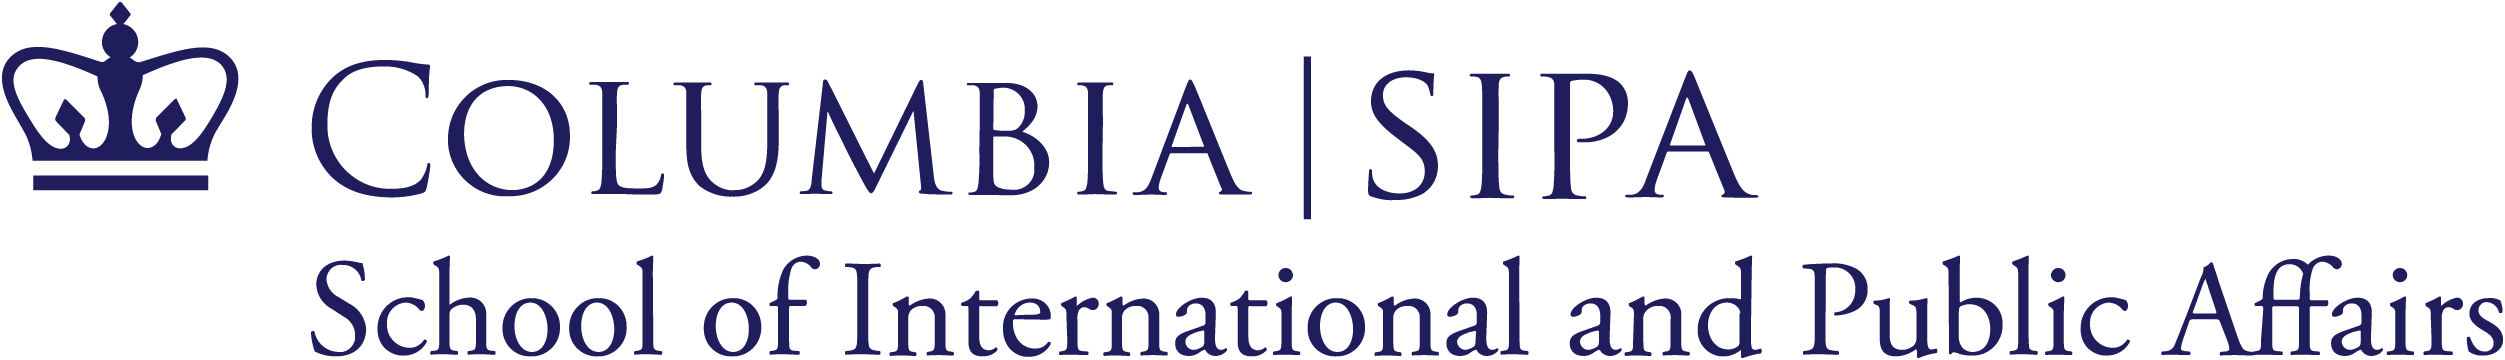 Columbia-SIPA logo